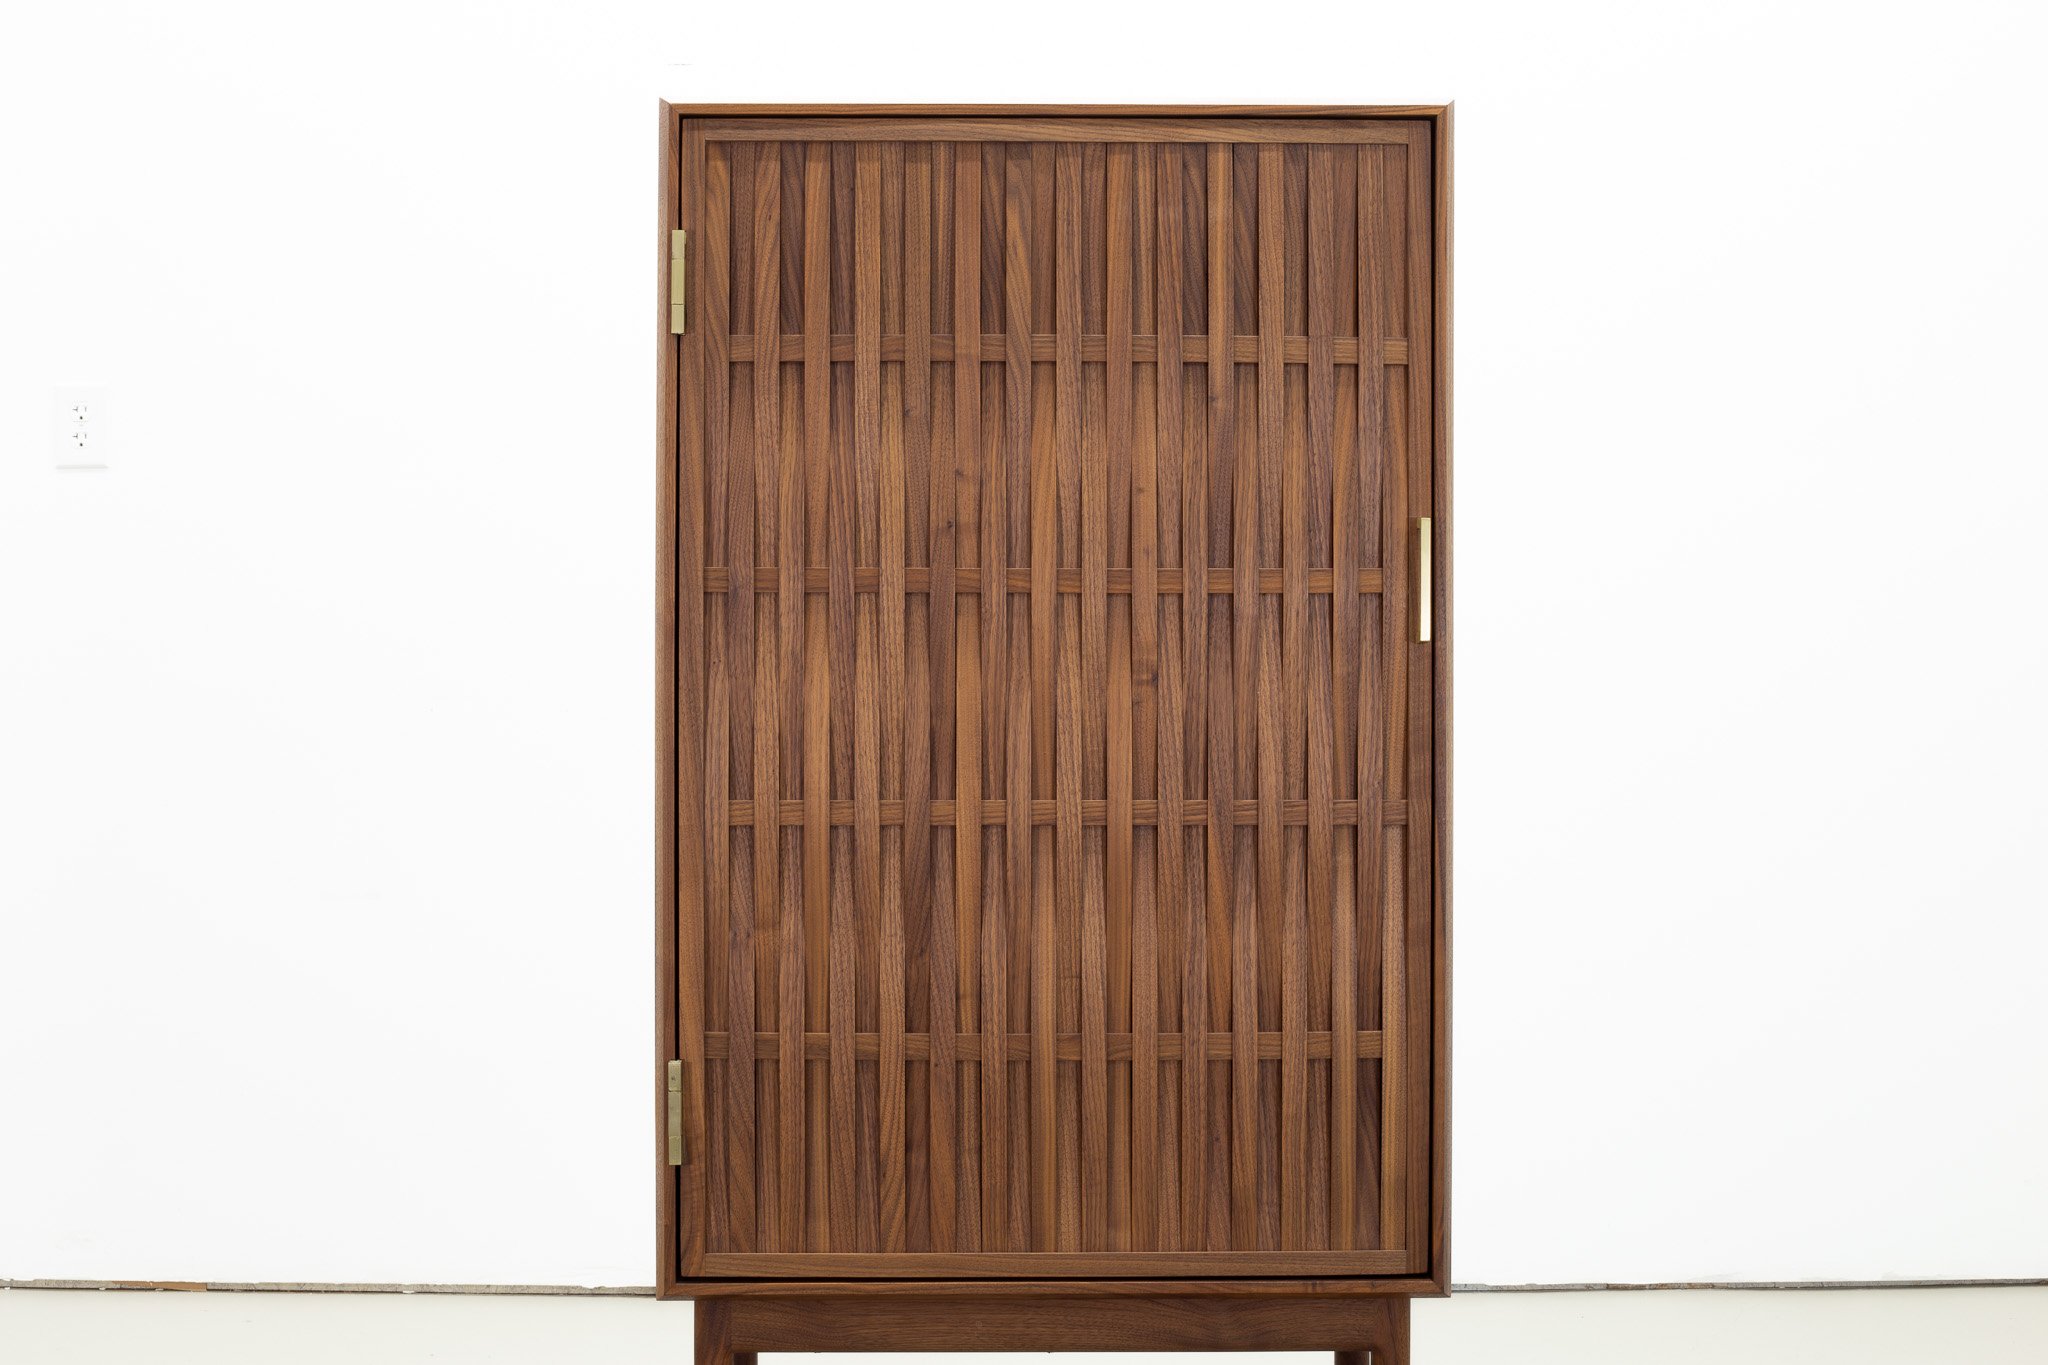 Woven Bar Cabinet - $4000